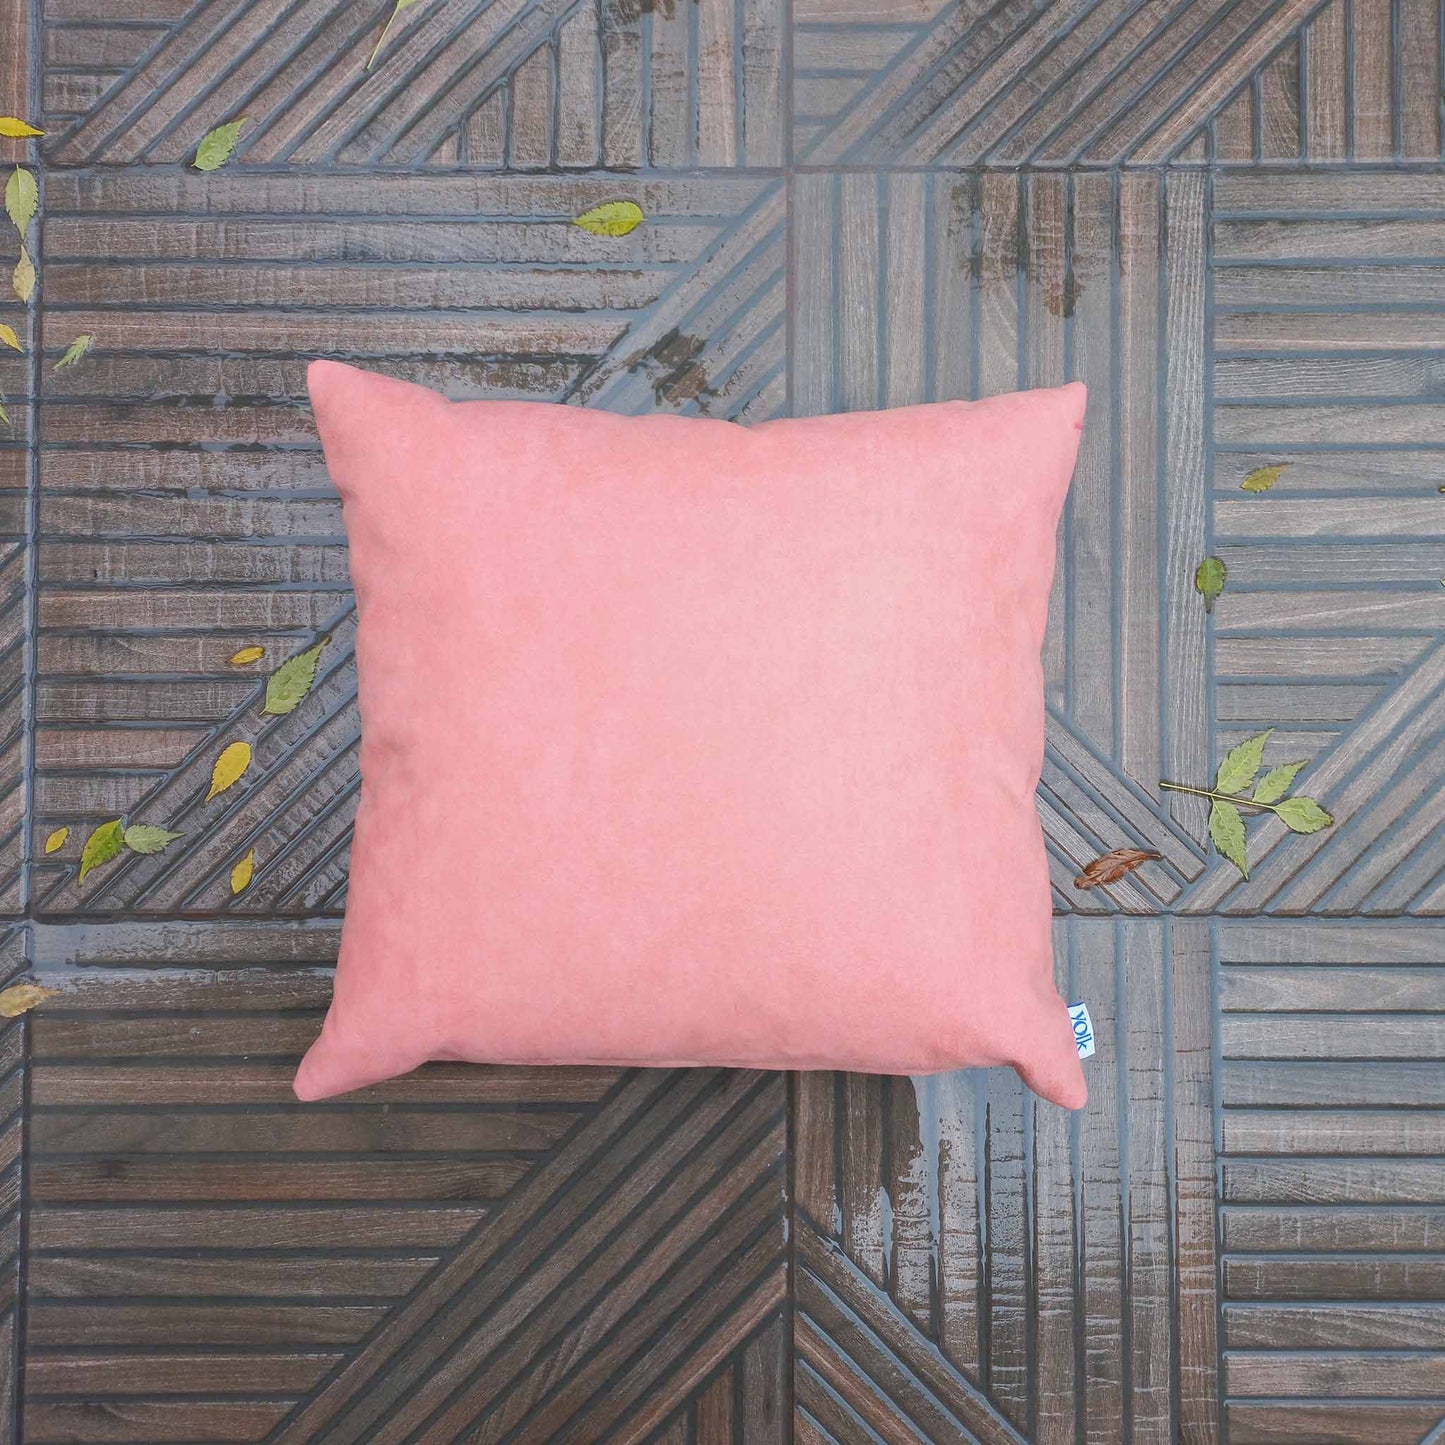 Pink decorative cushion on rainy balcony floor